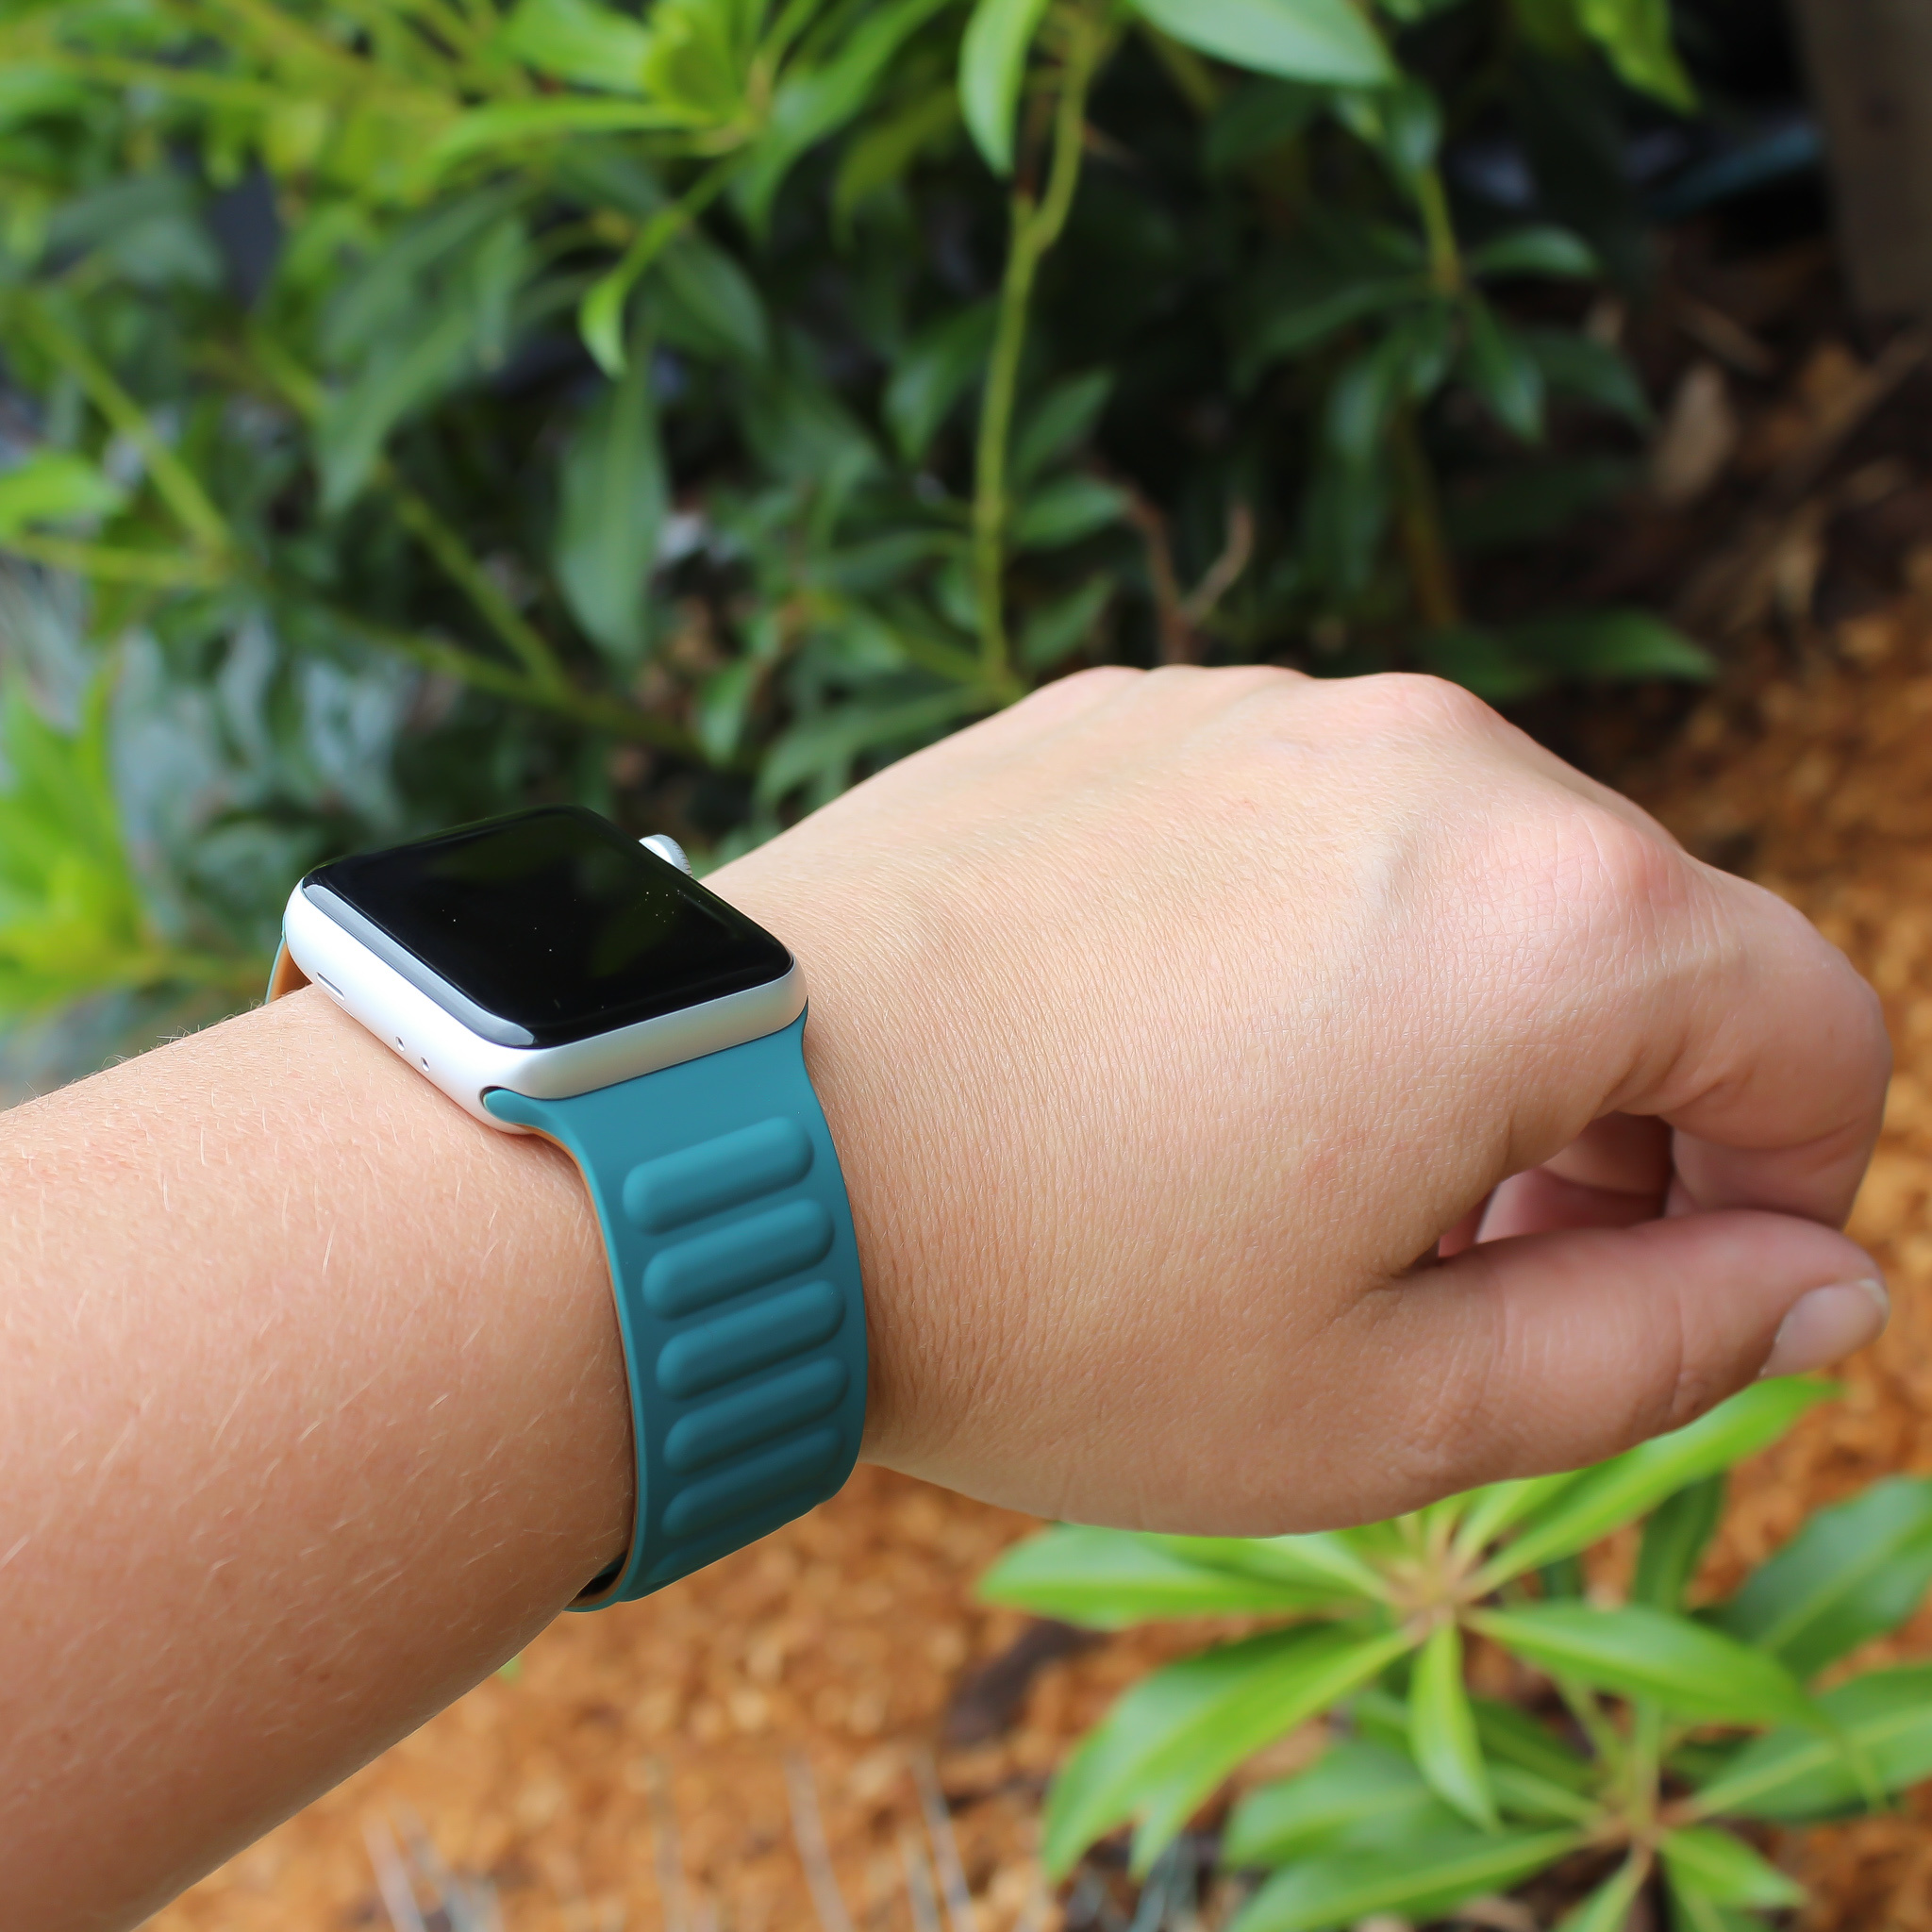 Apple Watch ribbel solo sport band - malachiet groen